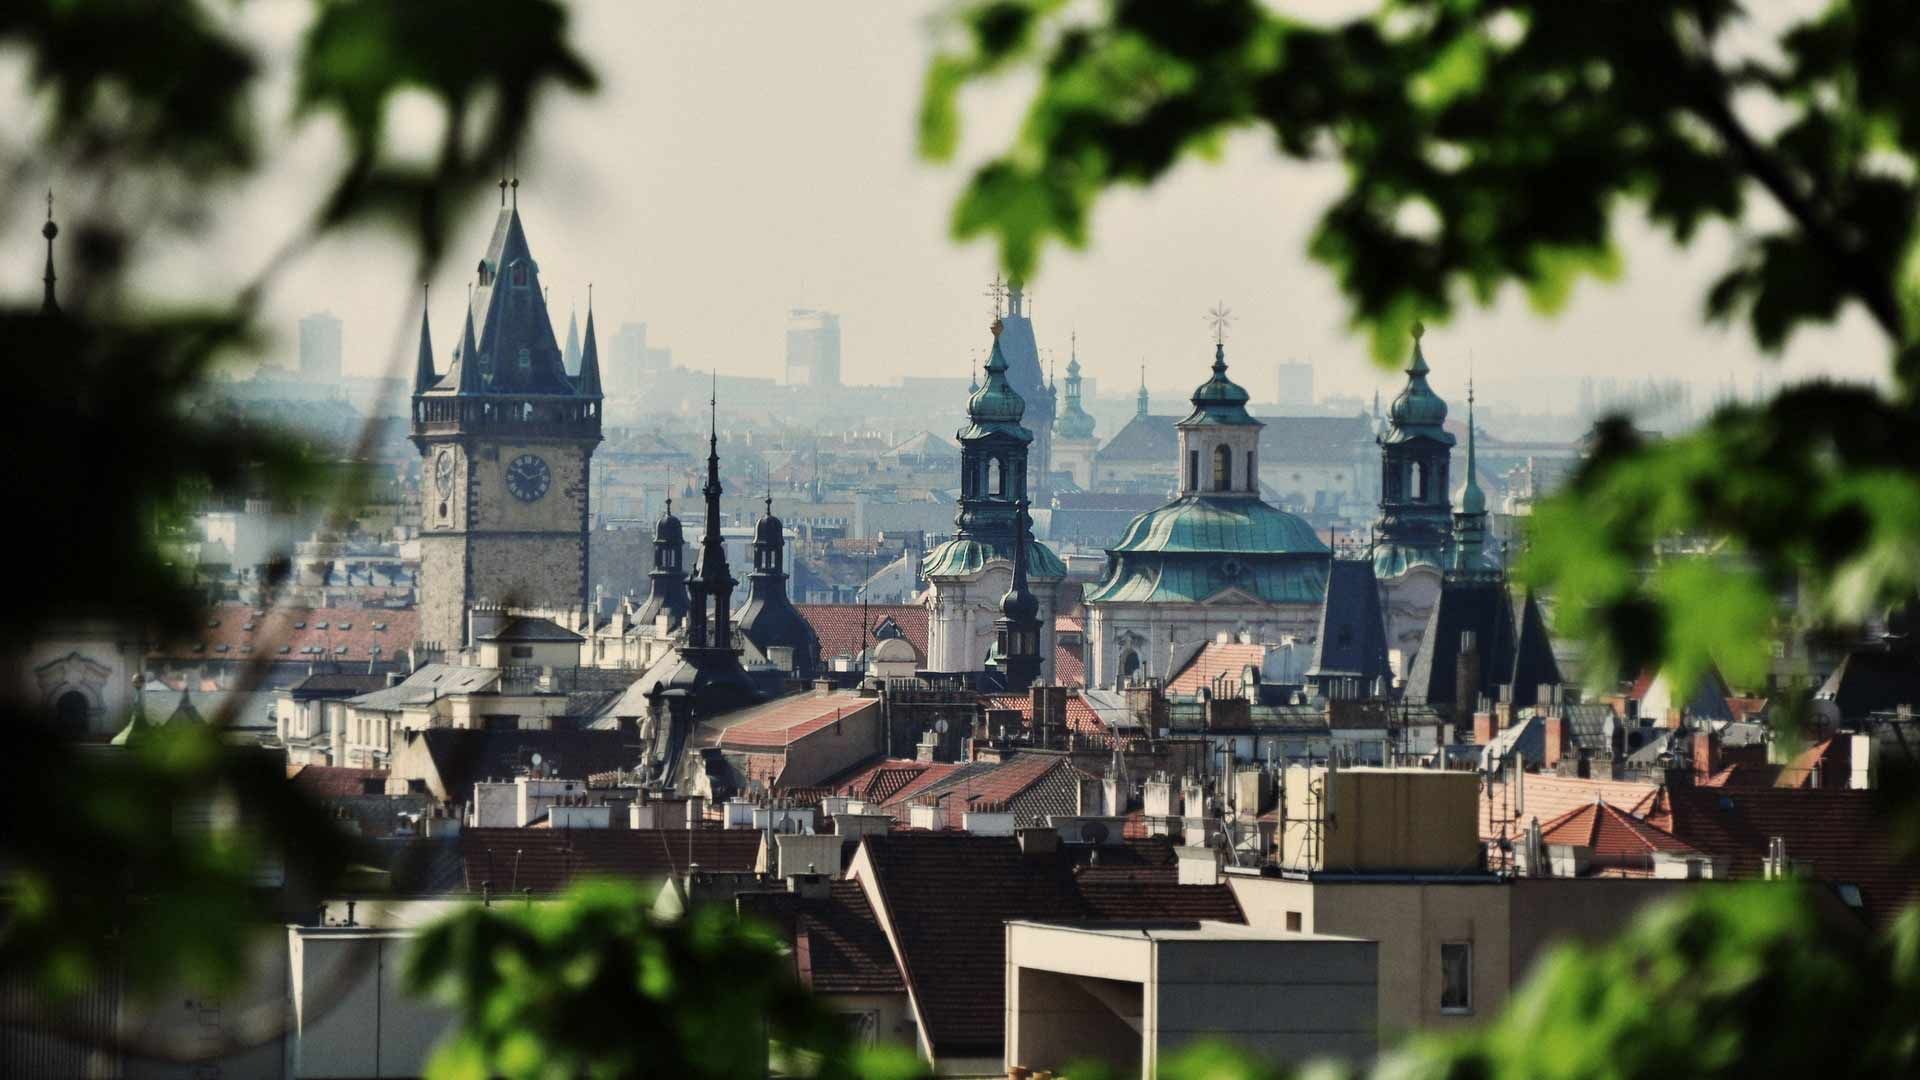 Prague wallpaper image hd